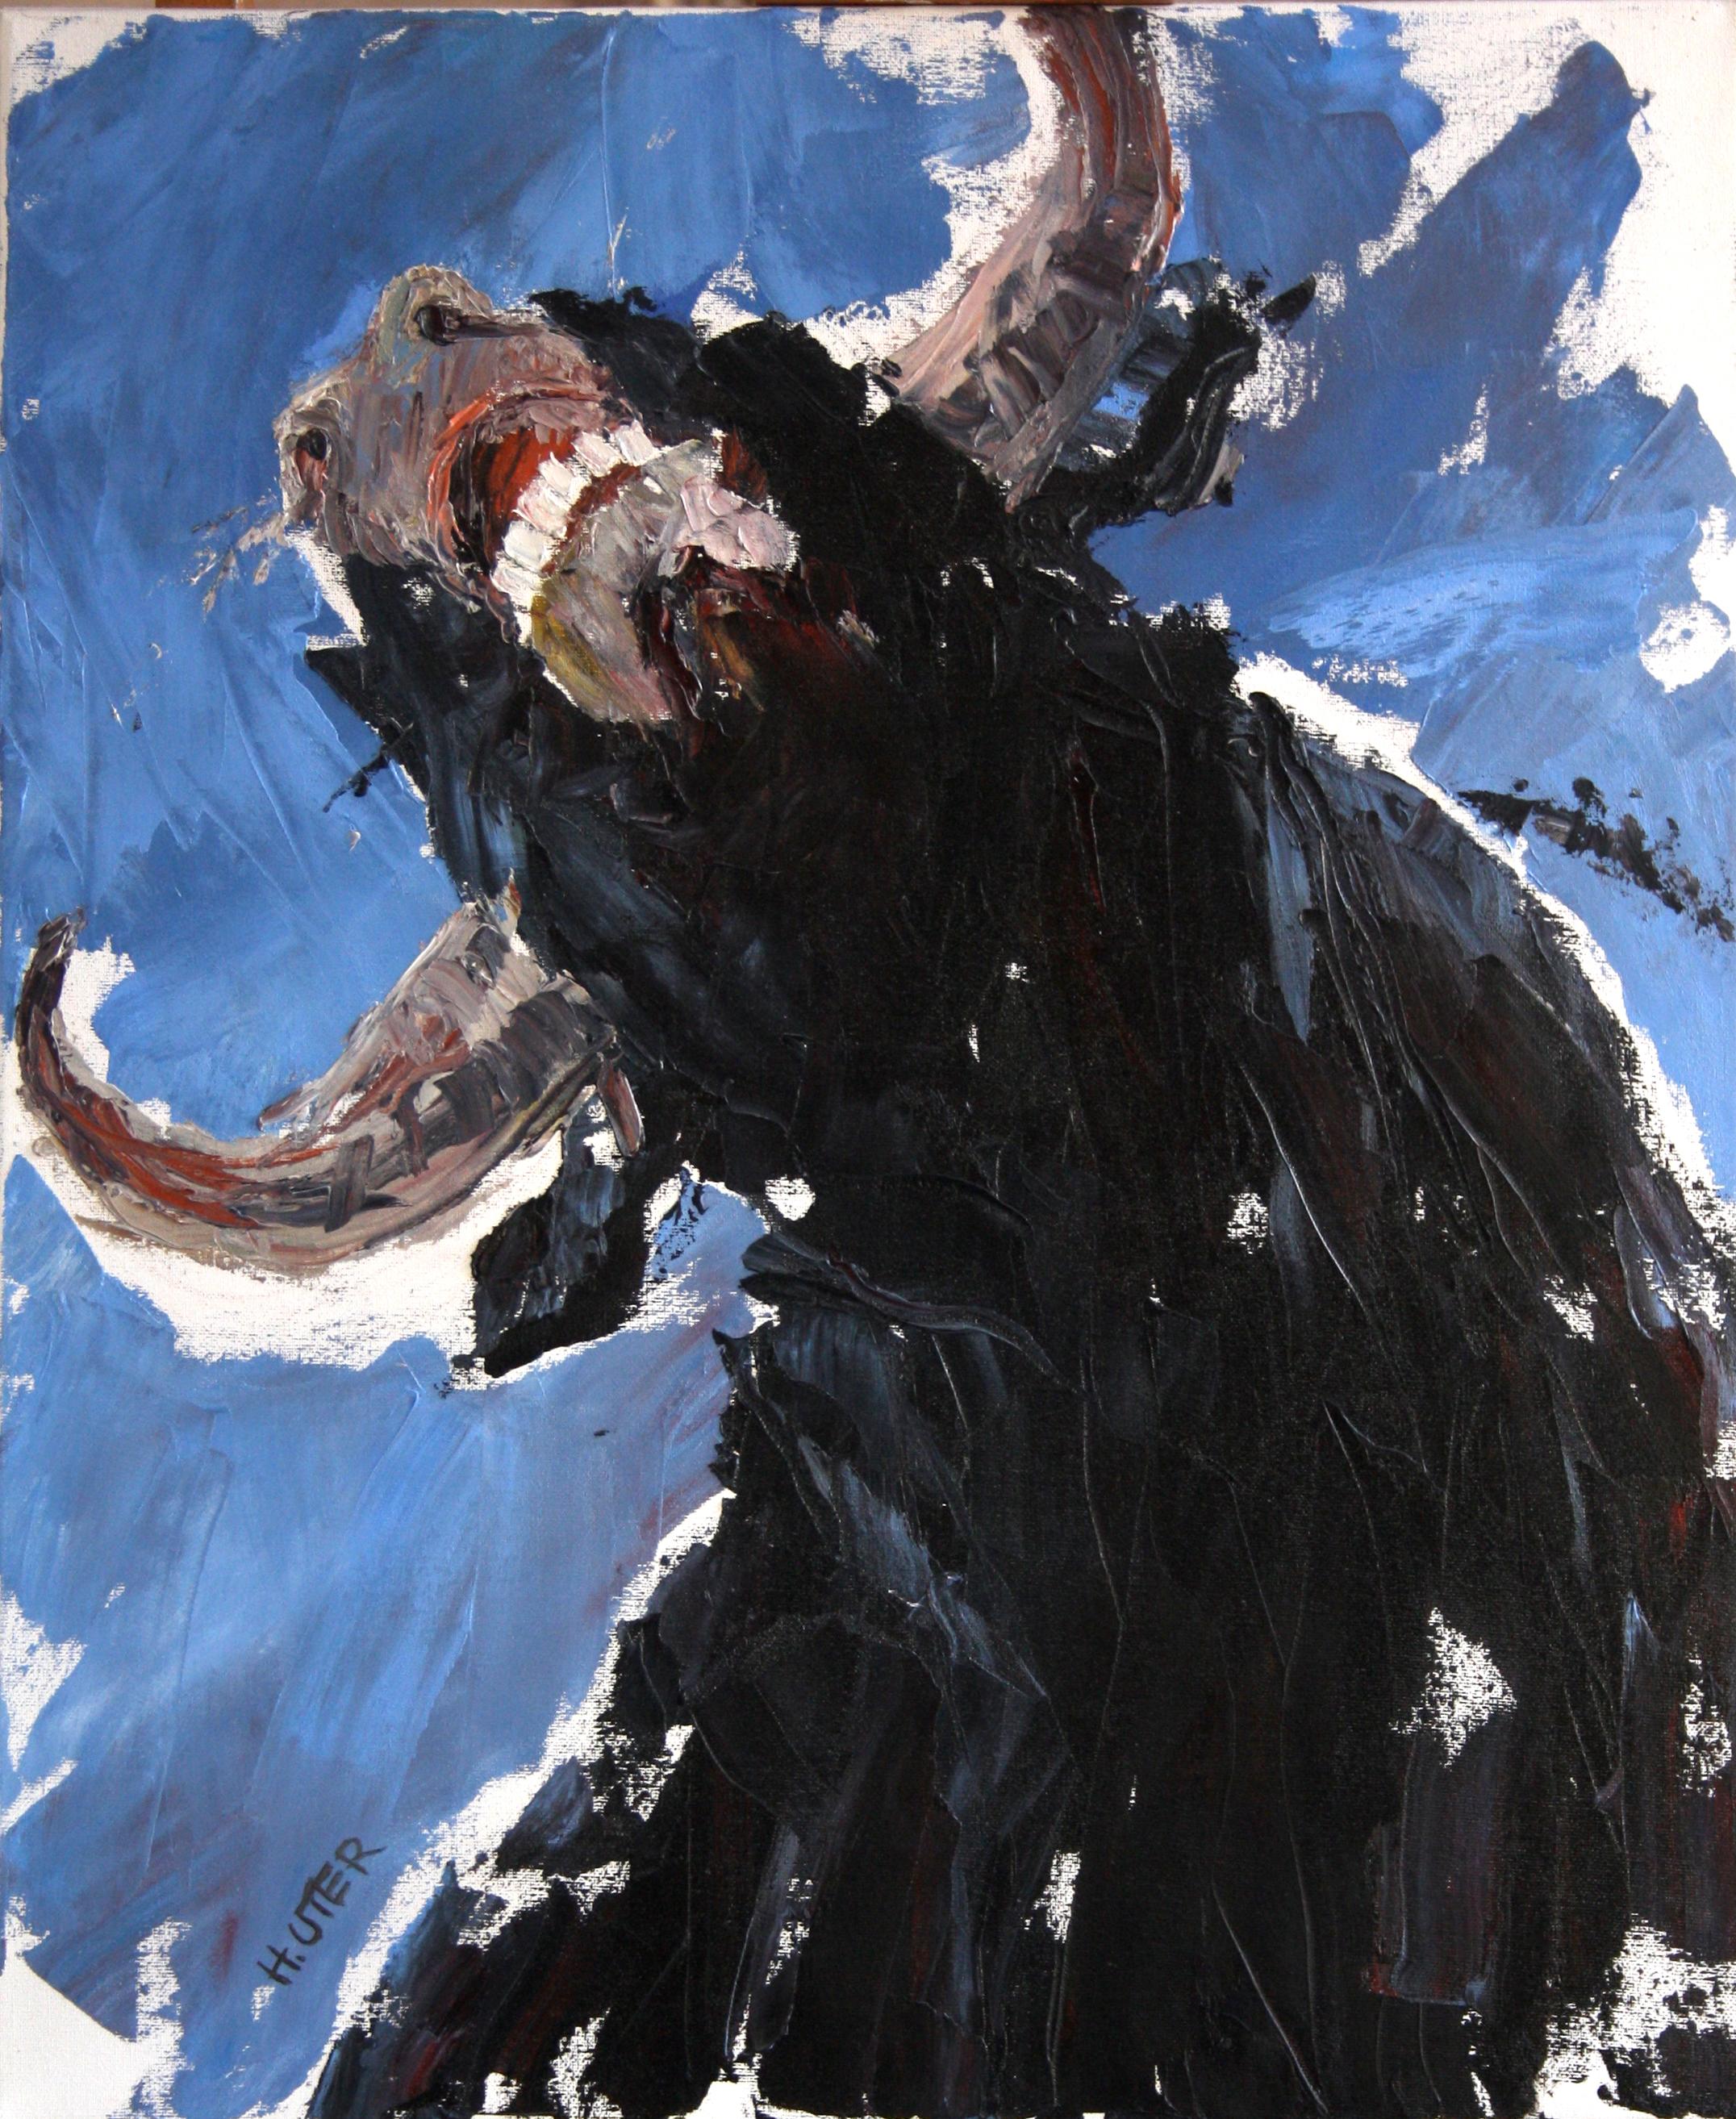 Öl auf Leinwand mit Messer


Helen Uter ist eine etablierte französisch-amerikanische Malerin, die 1955 geboren wurde und in Donnery, in der Nähe von Orléans, Frankreich, lebt und arbeitet. In ihren Werken, die stark von Edward Hopper beeinflusst